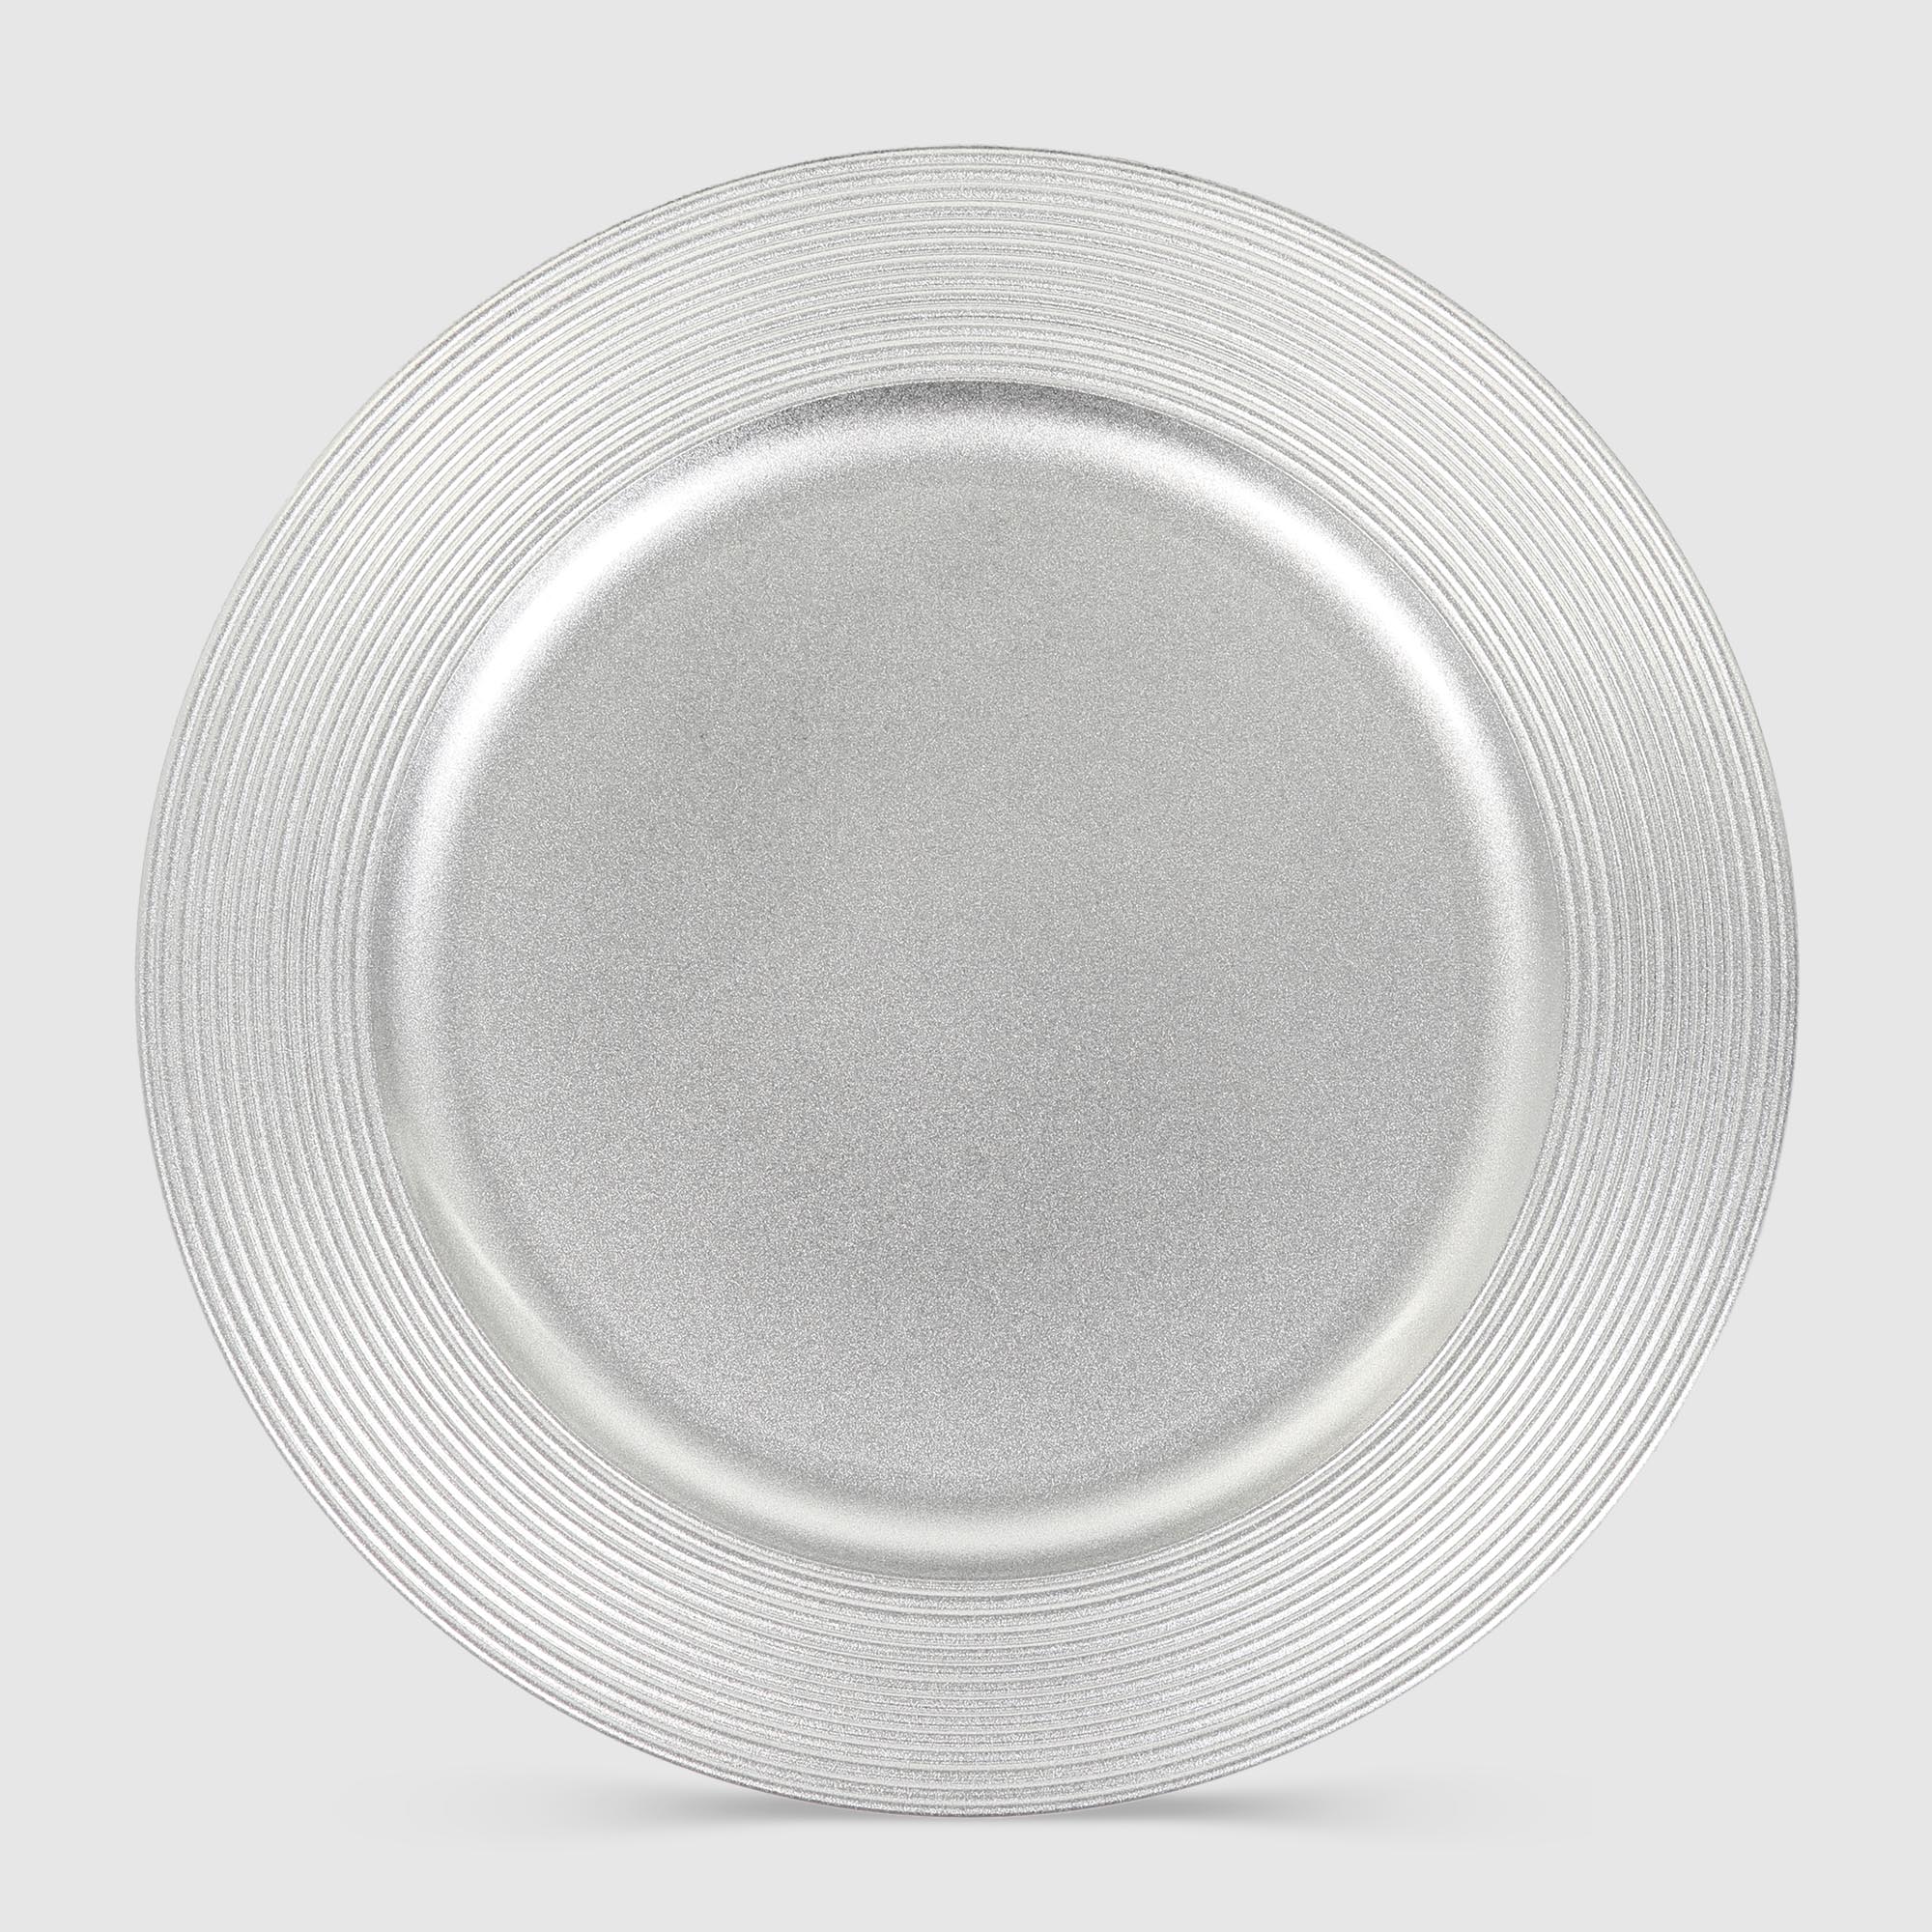 Подставка под горячее Mercury Tableware Circle серебро 33 см украшение подставка новогоднее mercury tableware в ассортименте 20 см